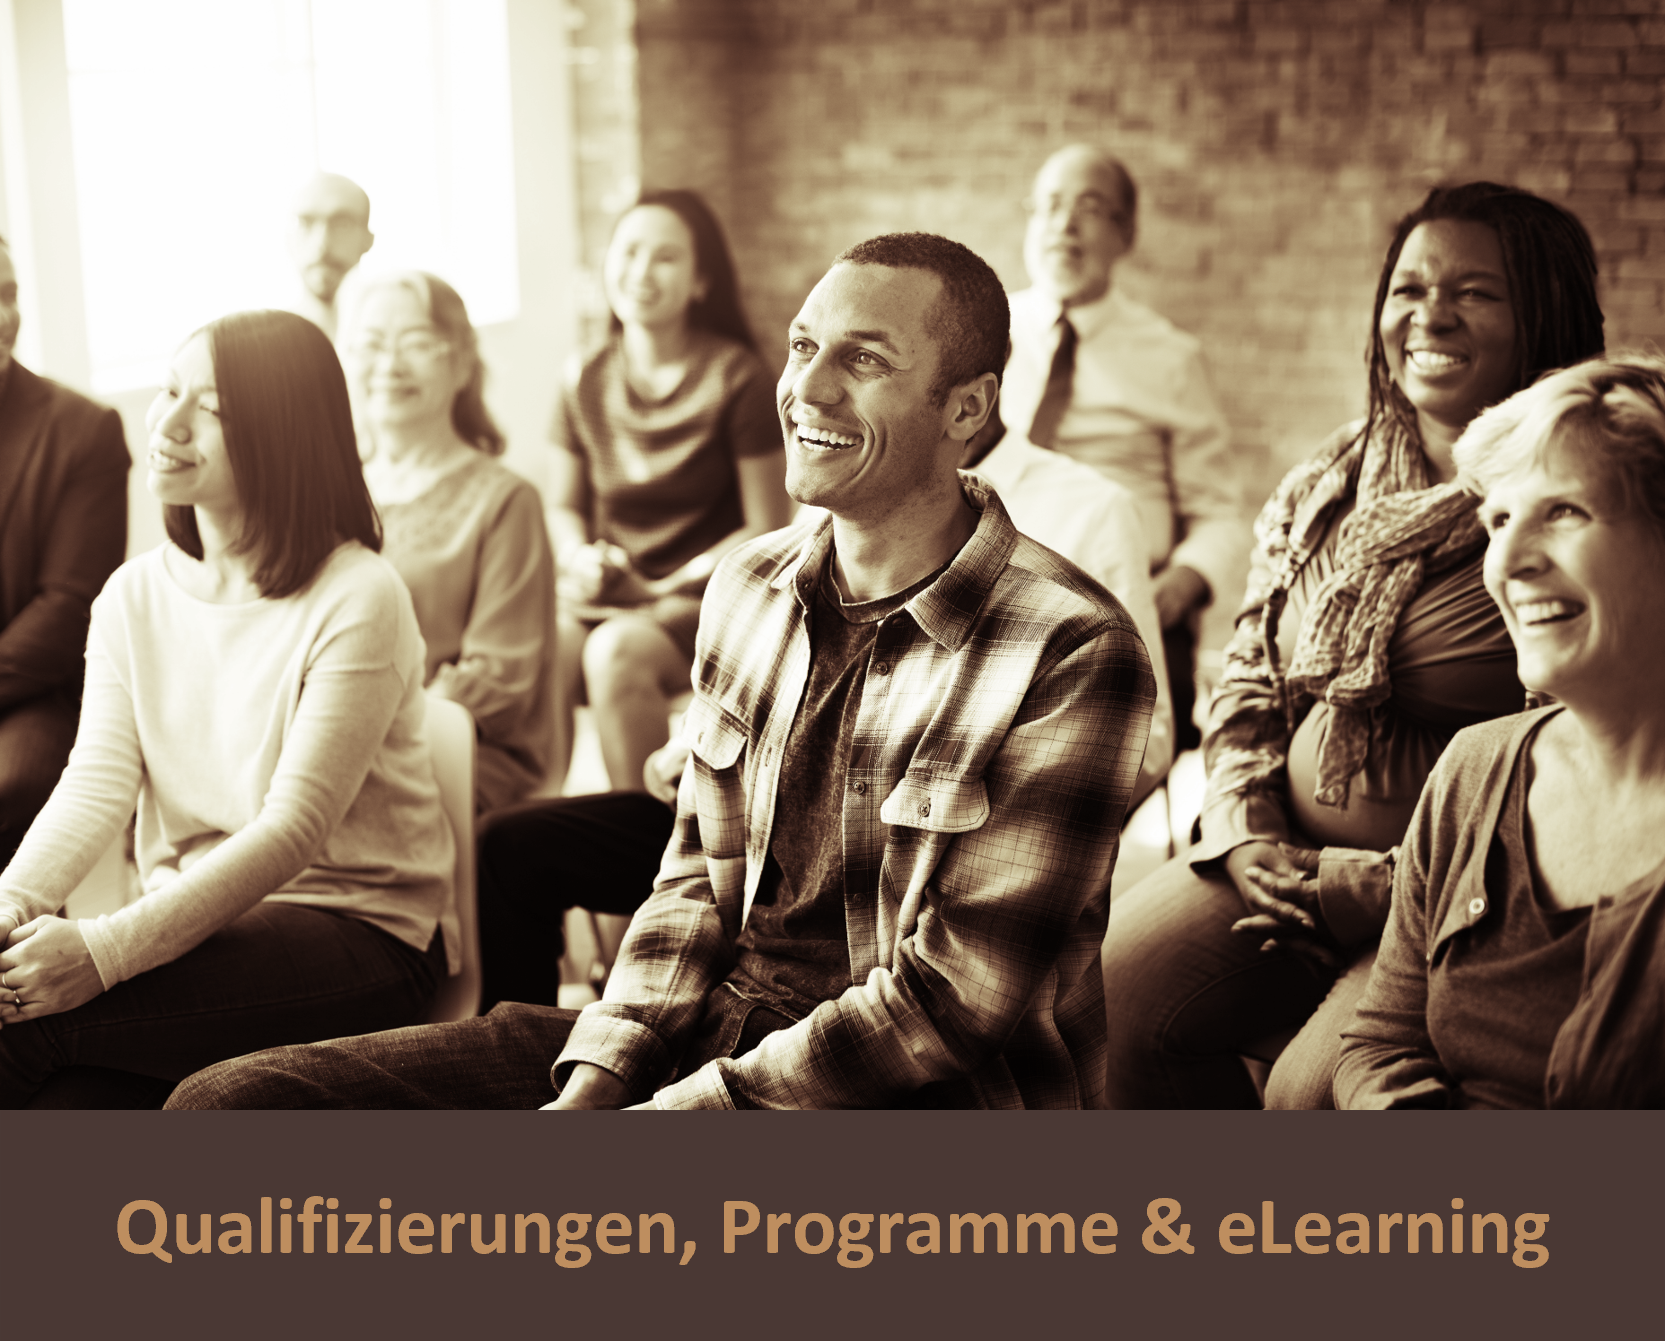 Qualifizierungen Programme und eLearning